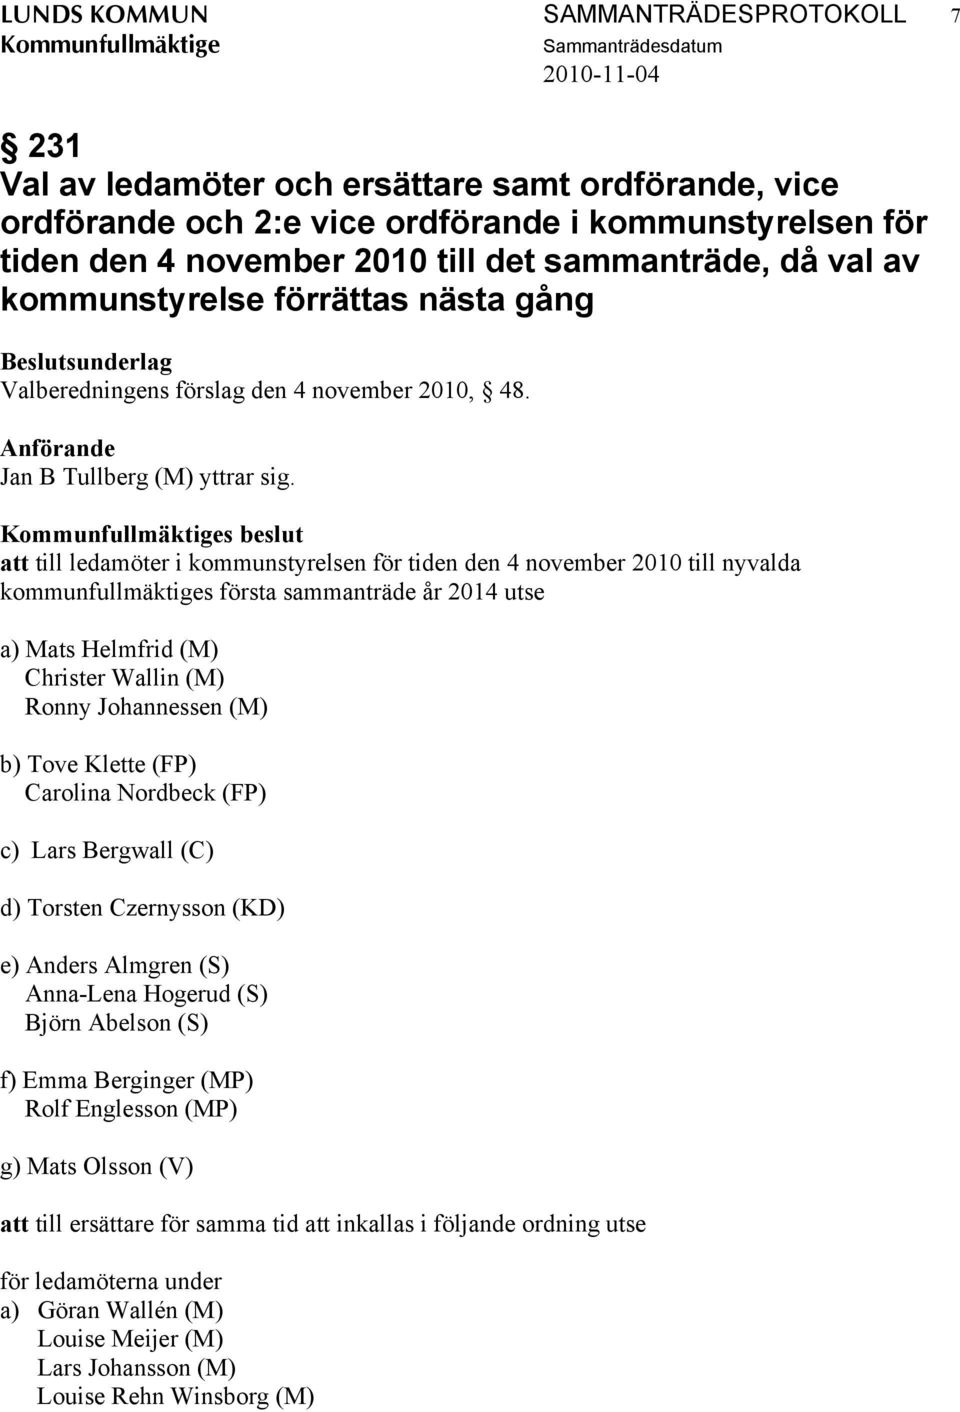 s beslut att till ledamöter i kommunstyrelsen för tiden den 4 november 2010 till nyvalda kommunfullmäktiges första sammanträde år 2014 utse a) Mats Helmfrid (M) Christer Wallin (M) Ronny Johannessen